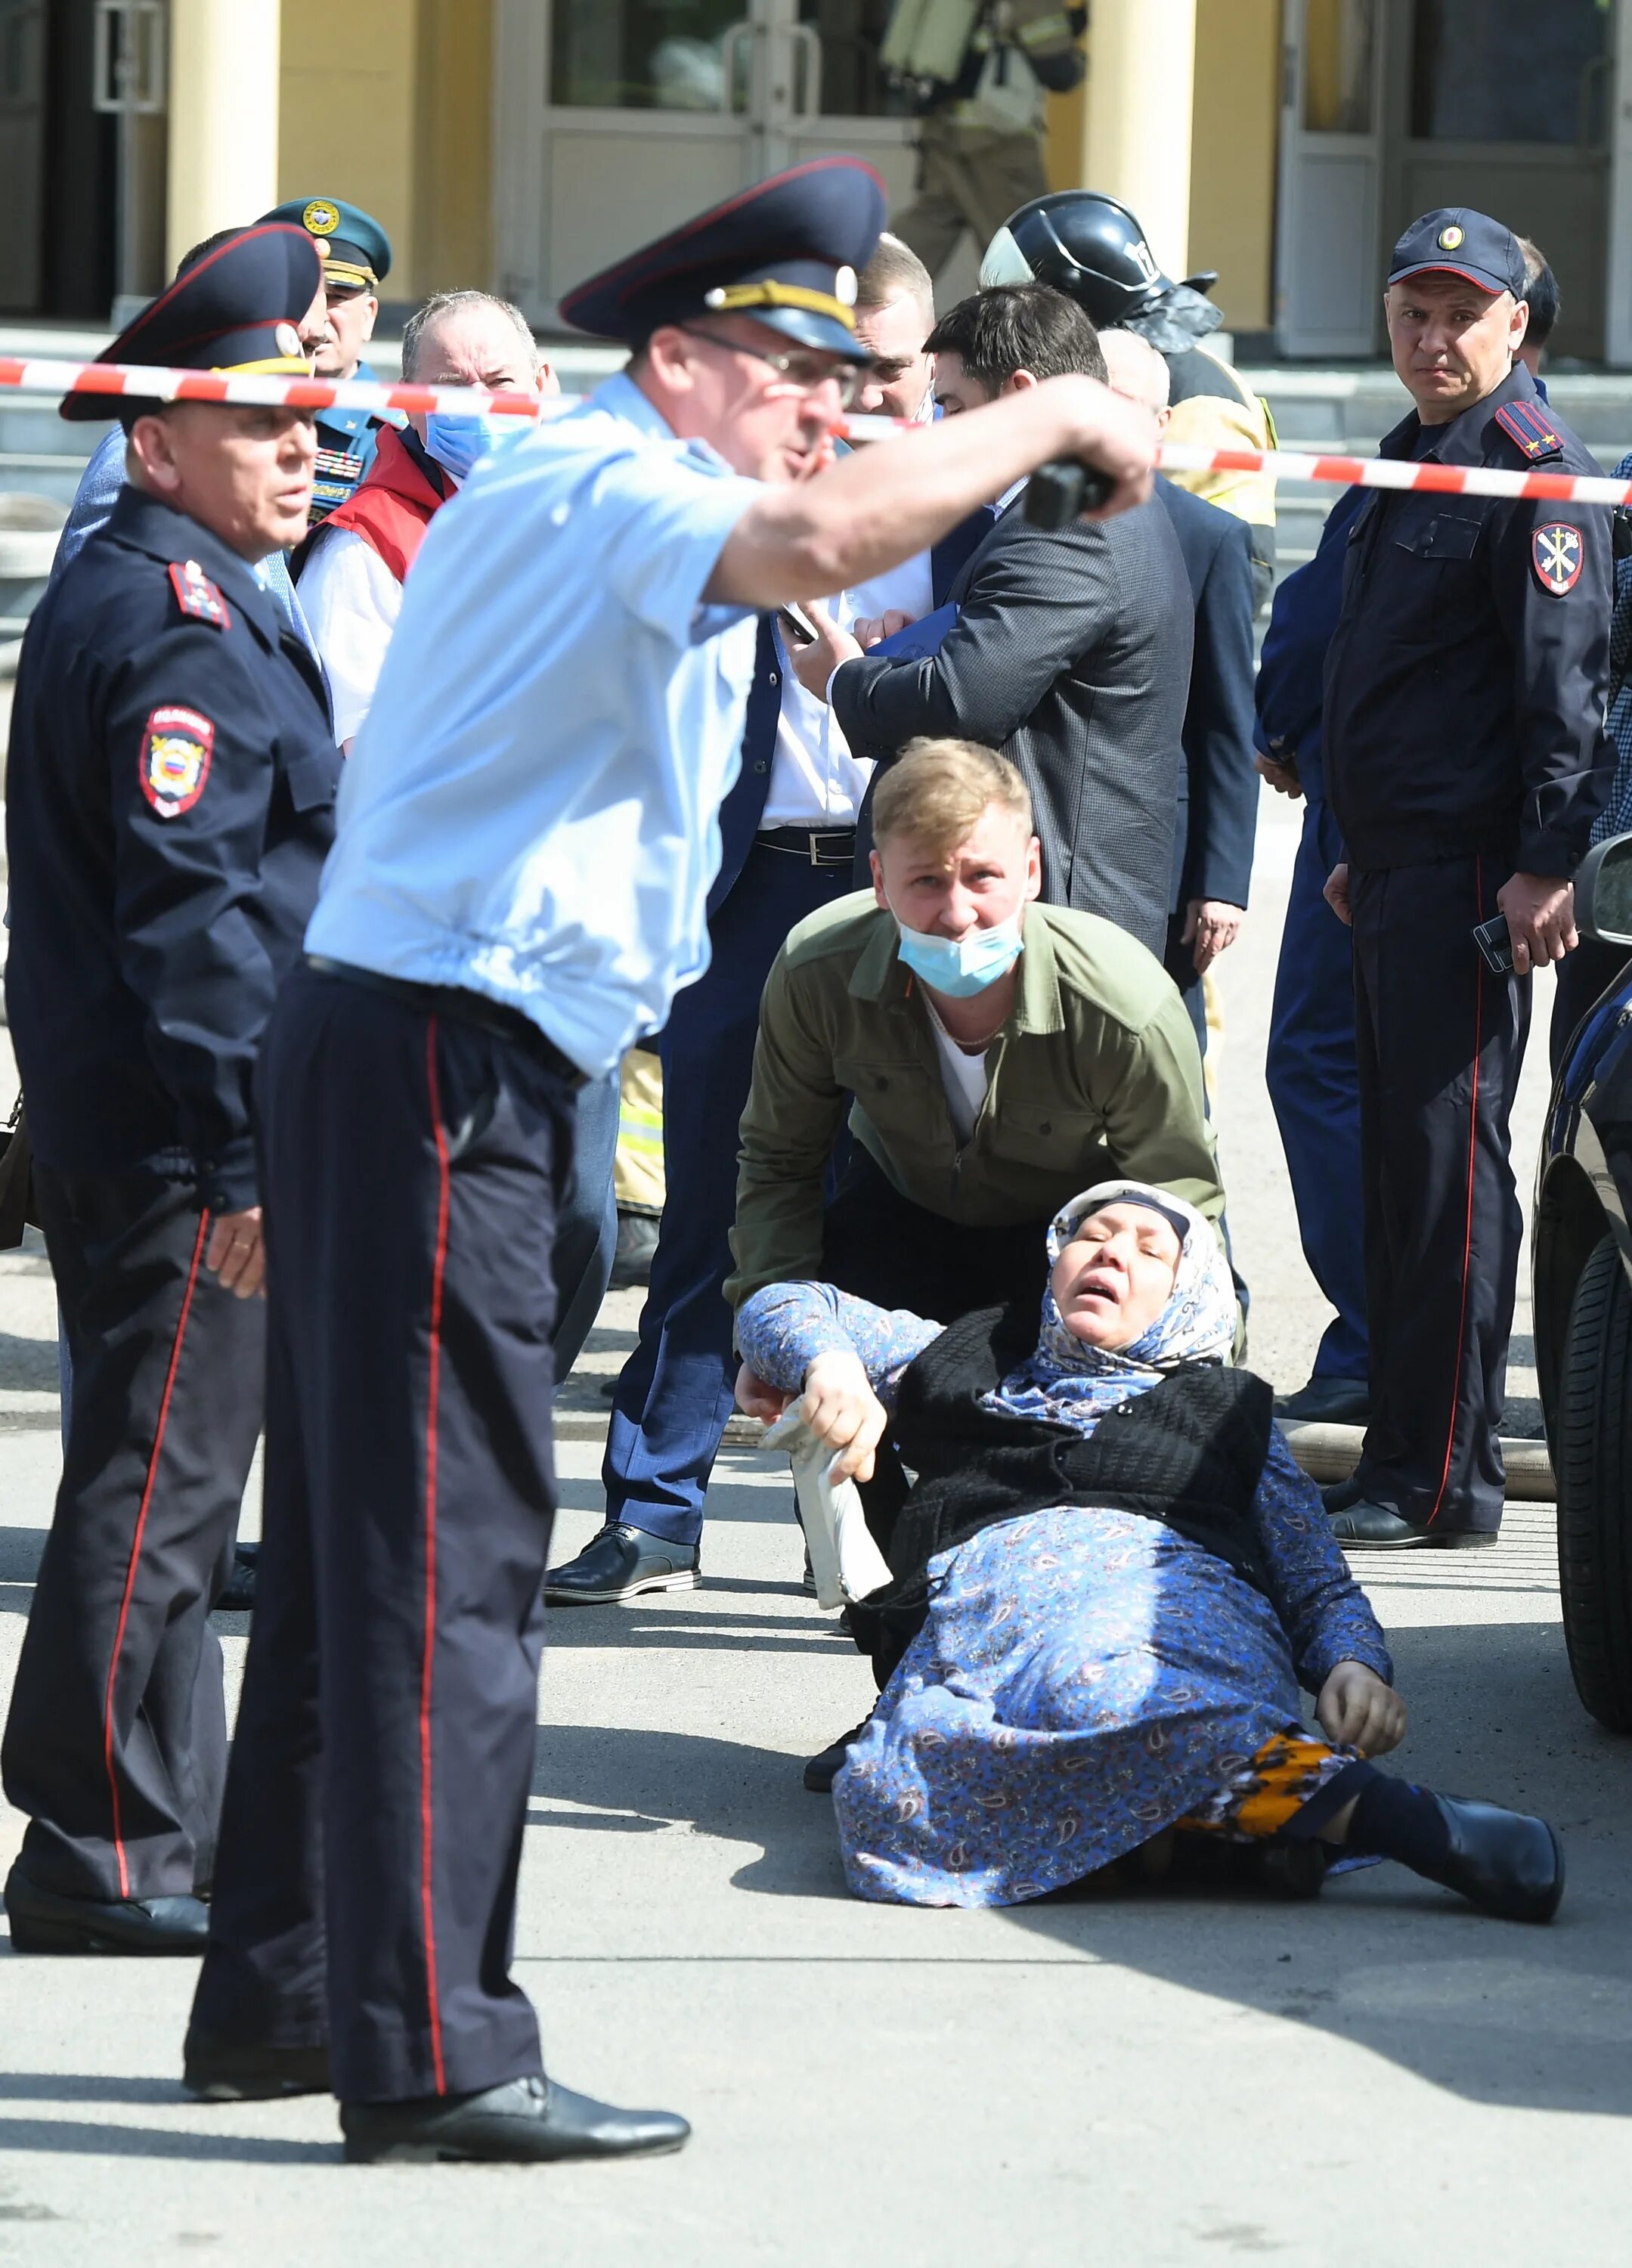 Страшные кадры из Казанской школы. Полицейские бегут фото. Изменения 11 мая